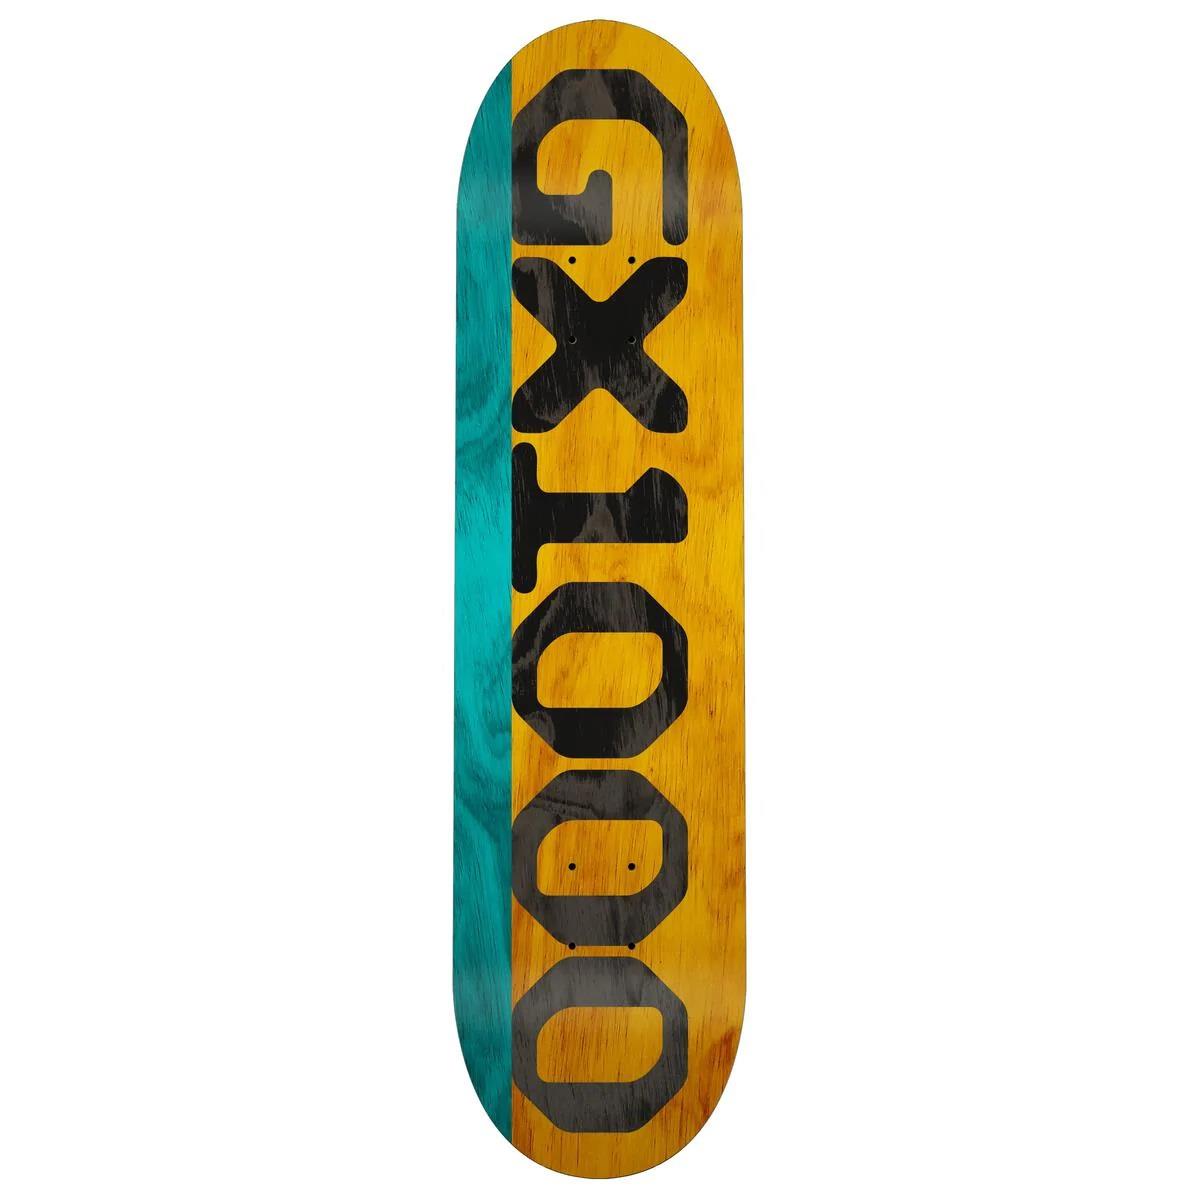 GX1000 - Pont en placage fendu sarcelle/jaune